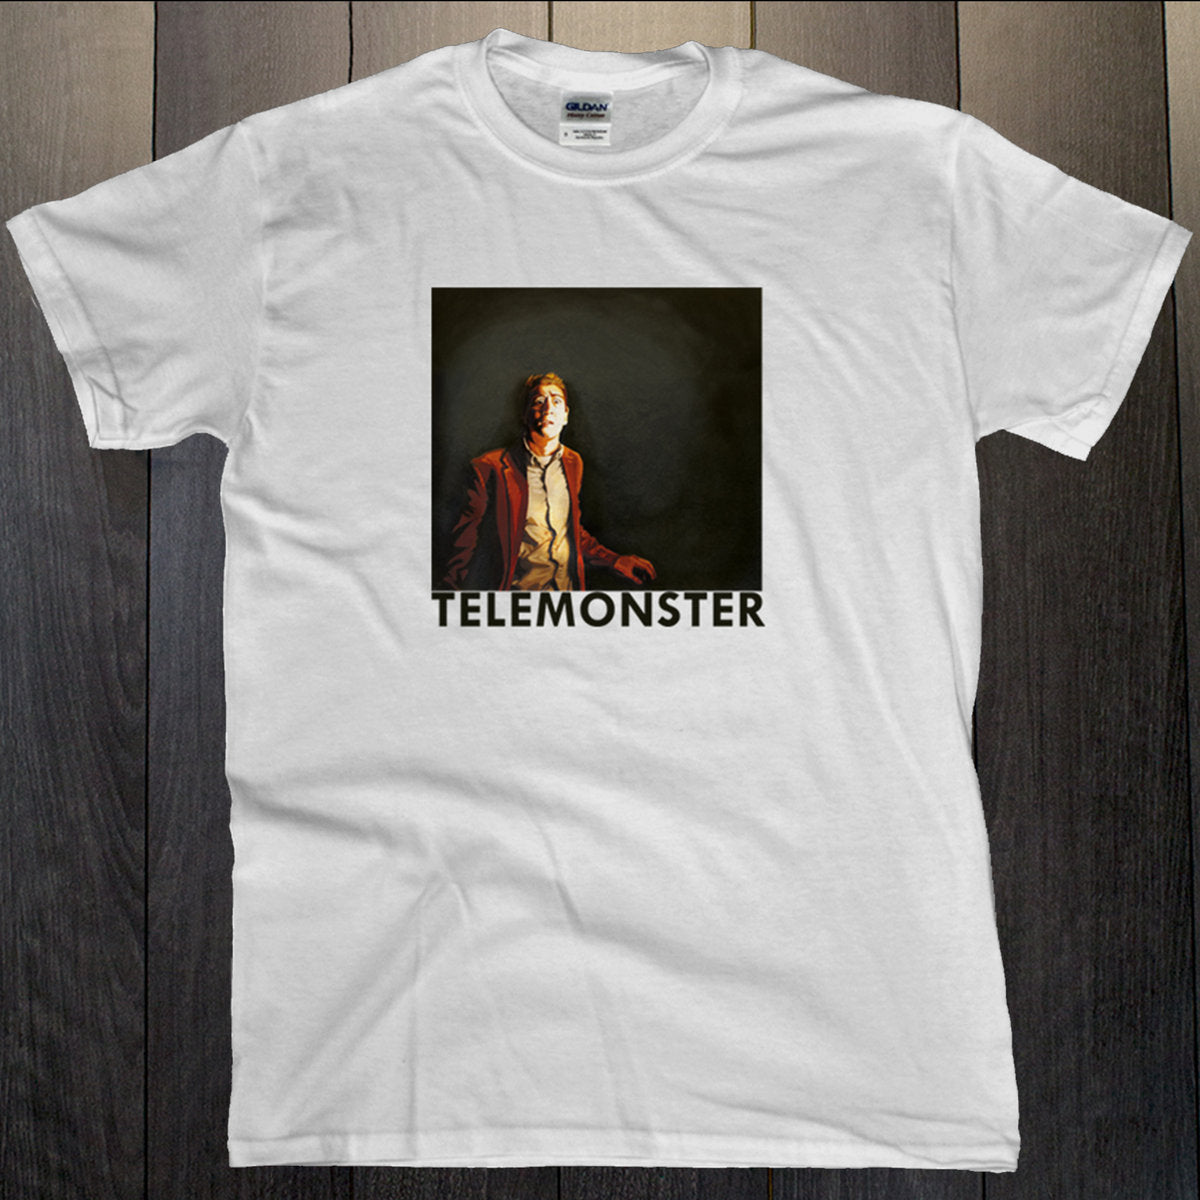 Telemonster - Introspecter Gallery T-Shirt